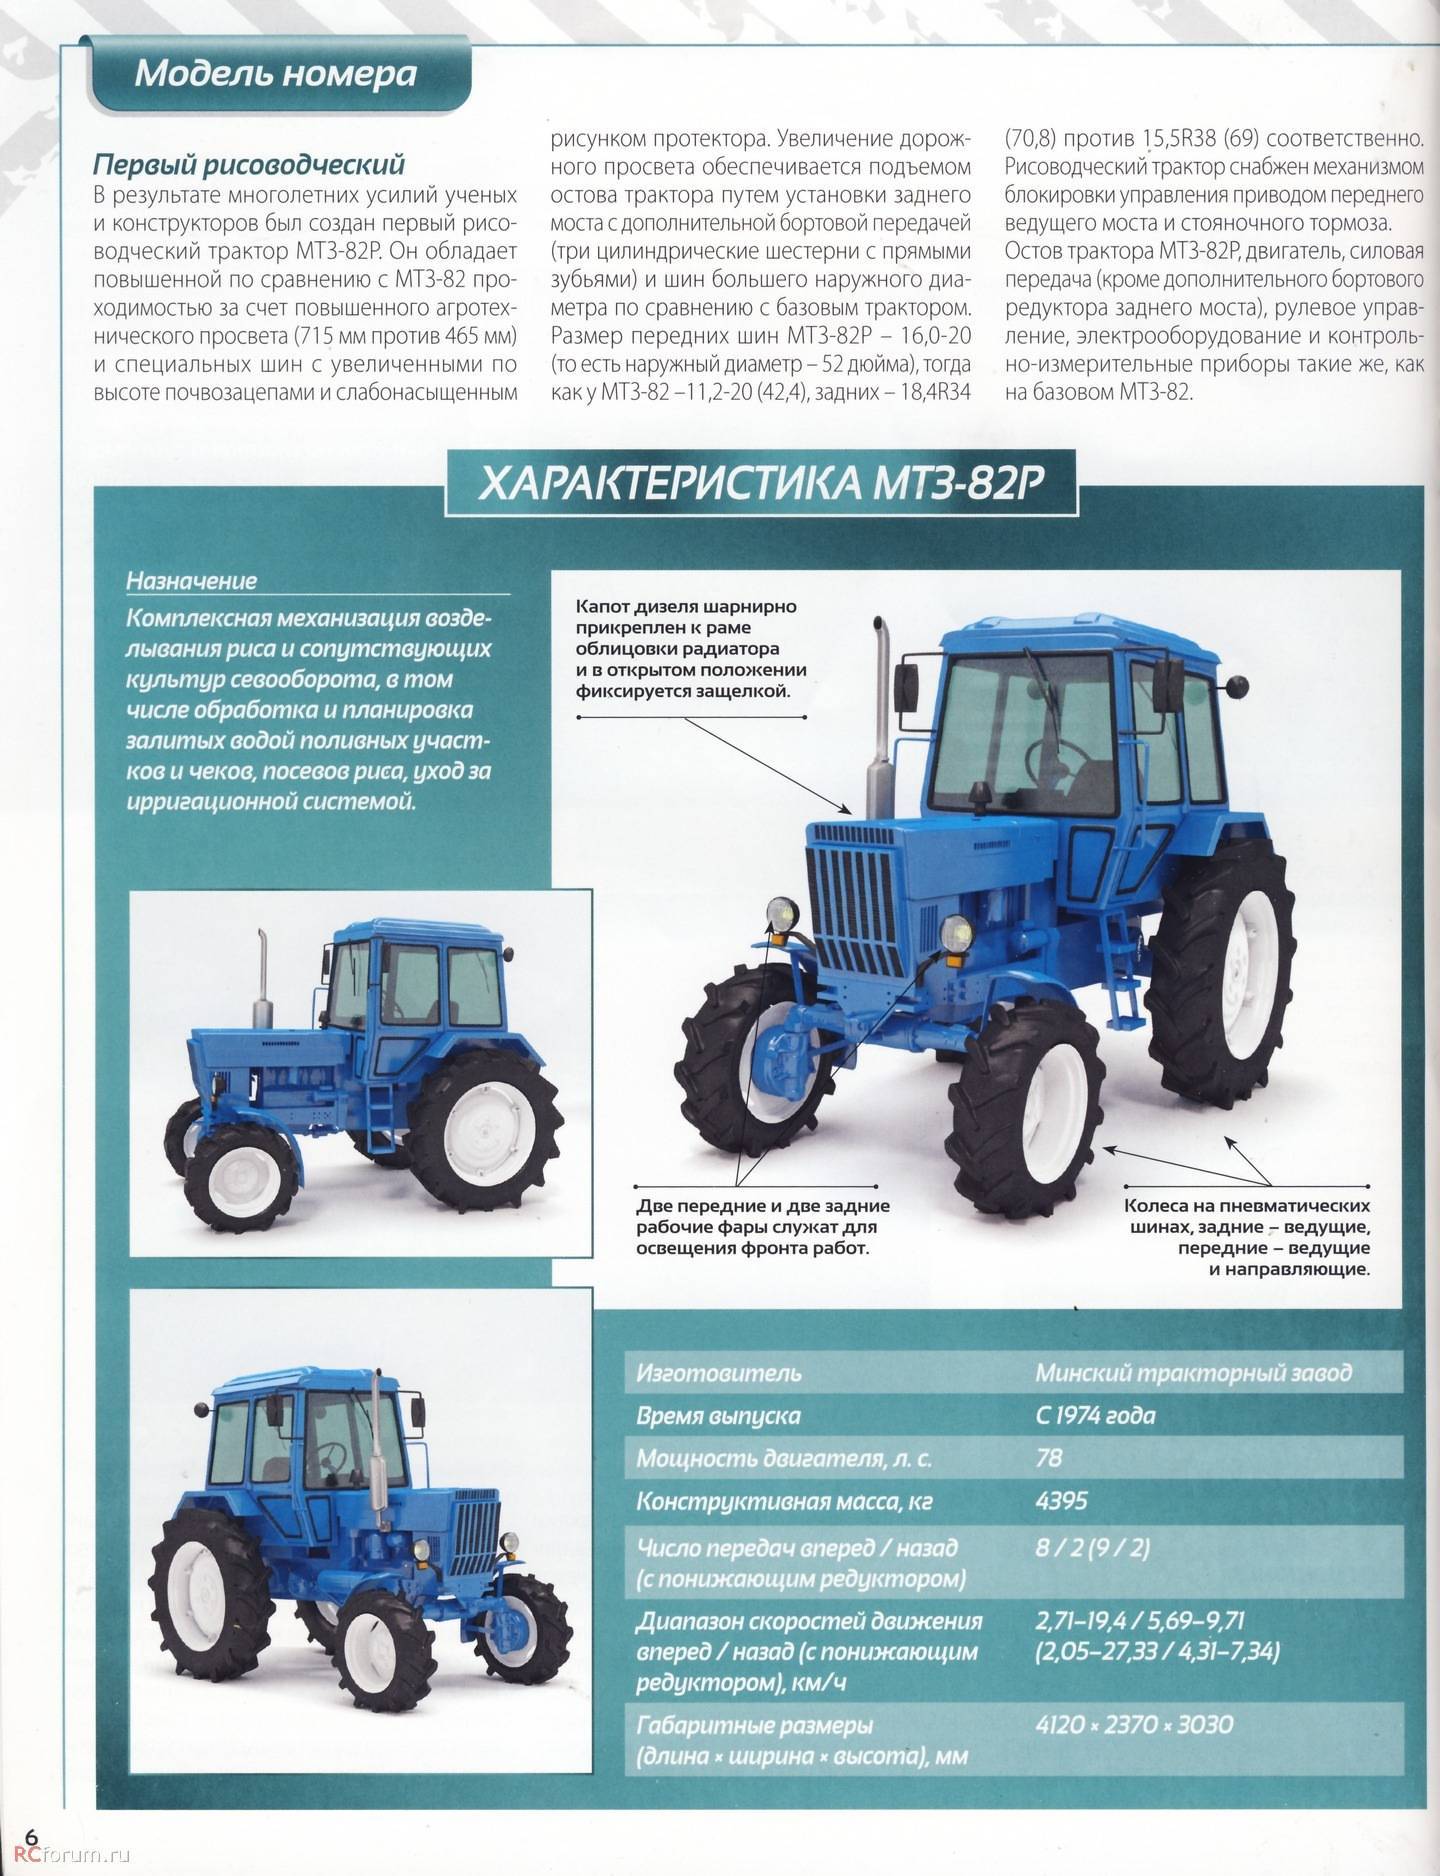 Трактор мтз-50: характеристики и особенности